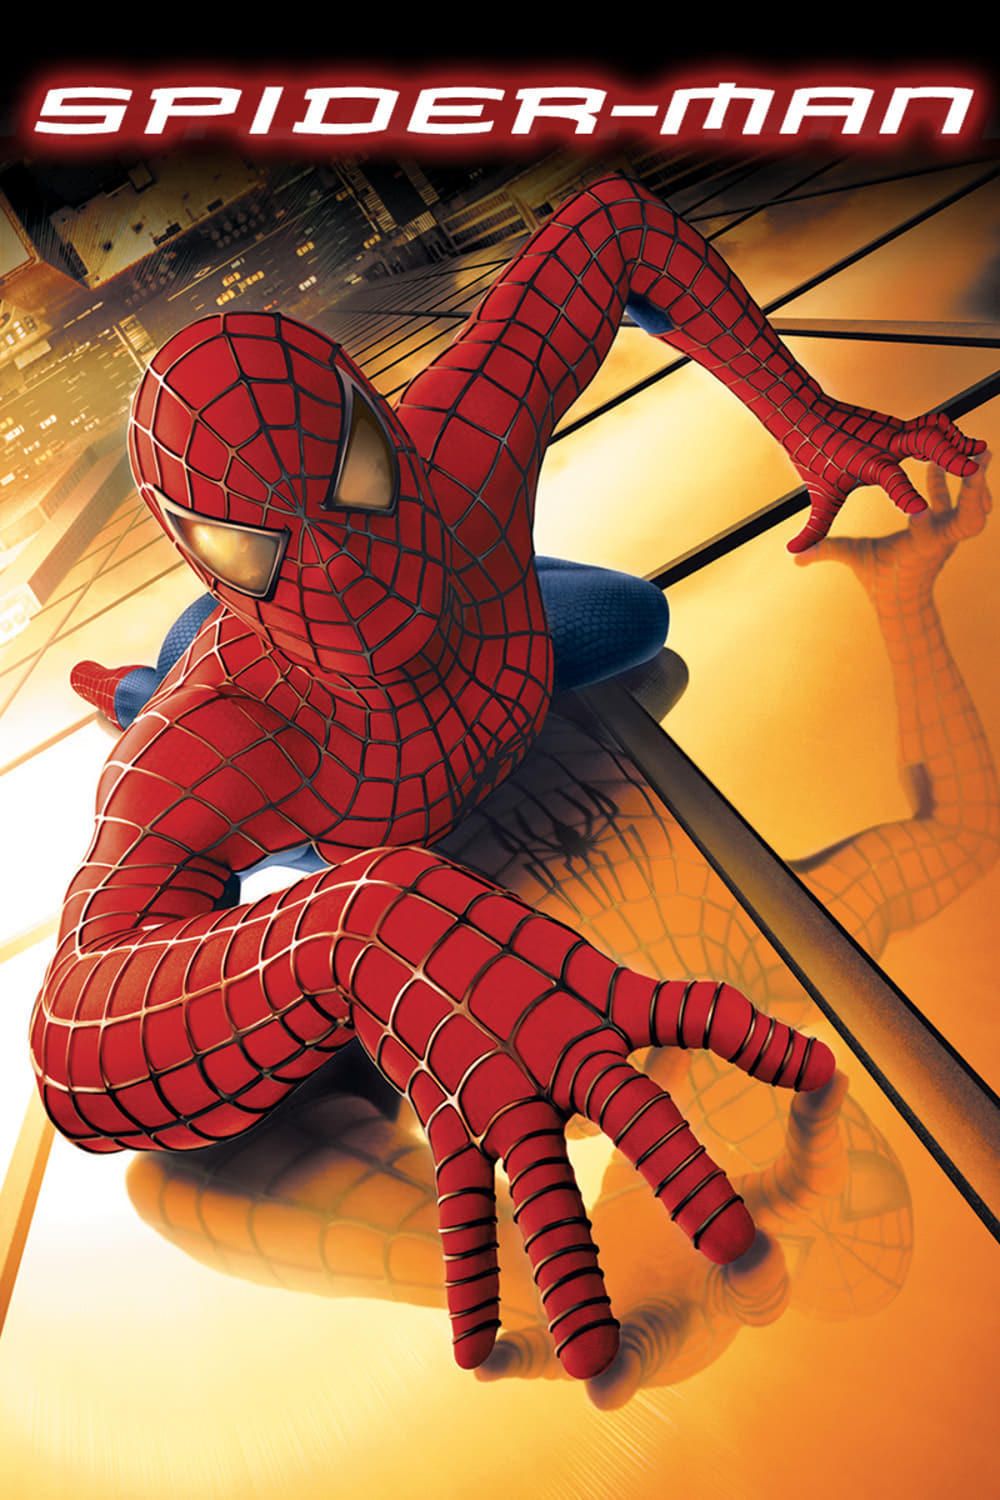 Spider-Man (2002) Movie Information & Trailers | KinoCheck